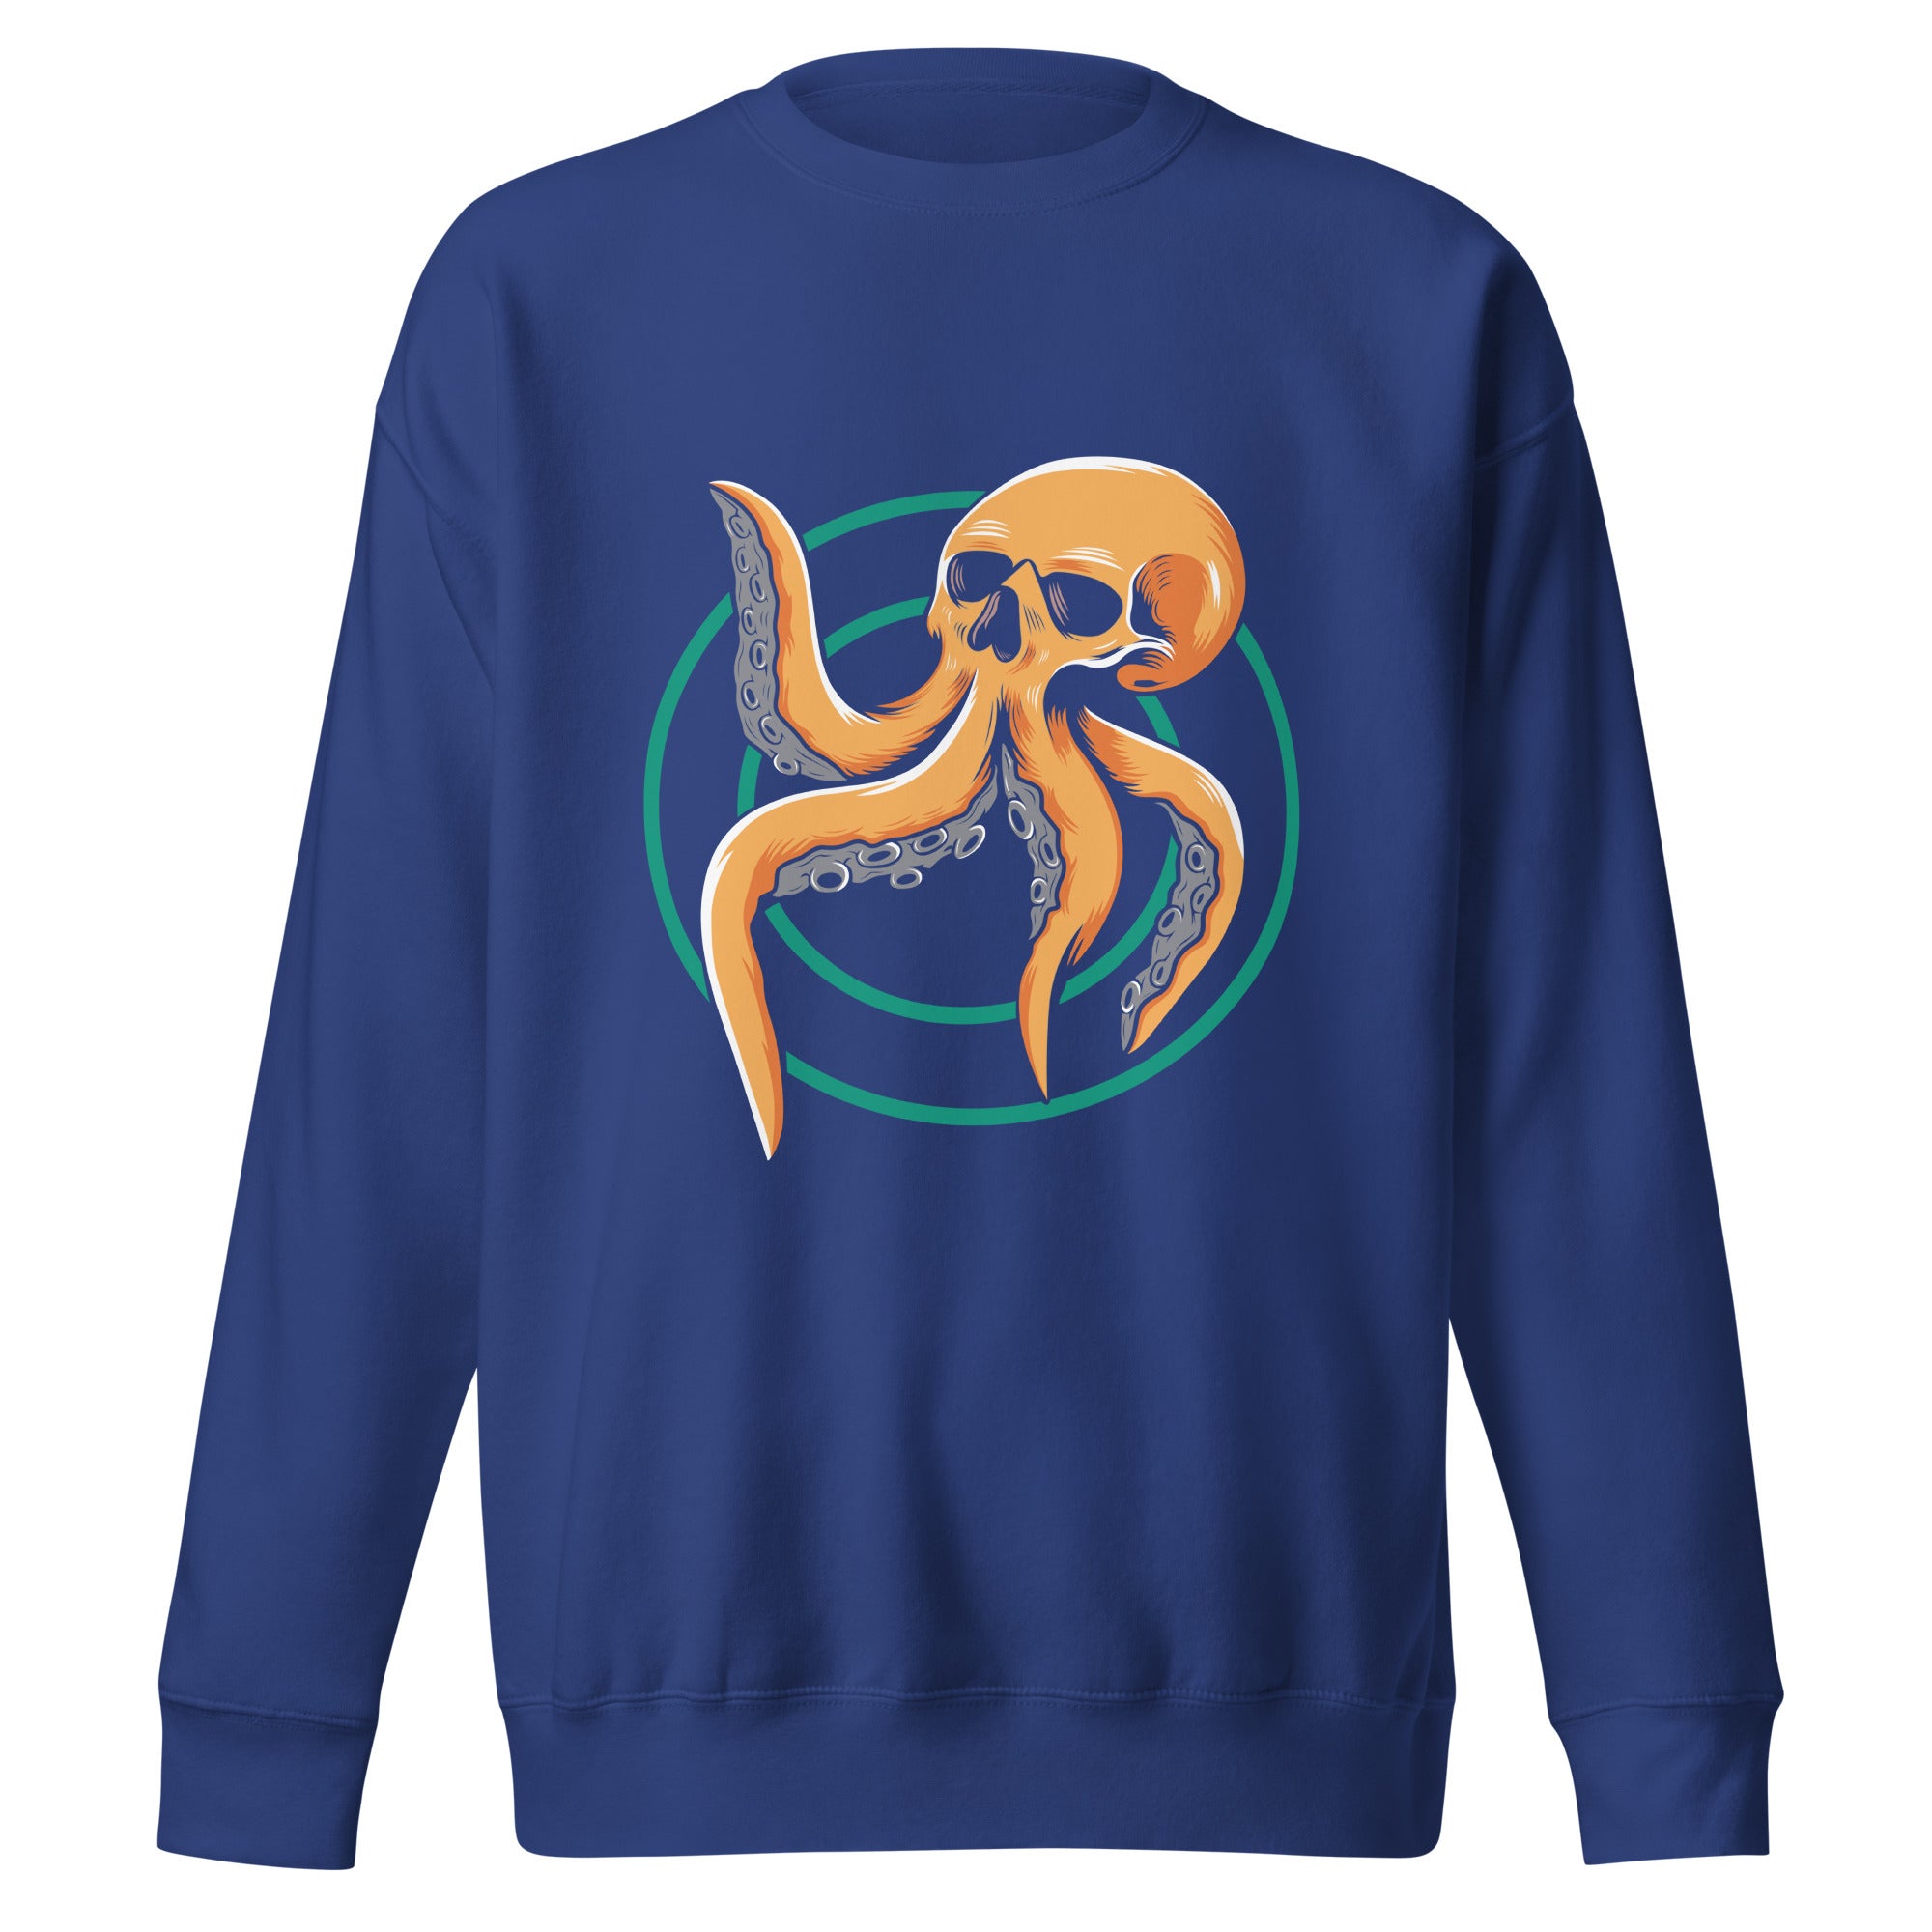 Kraken - Premium Unisex Crewneck Sweatshirt